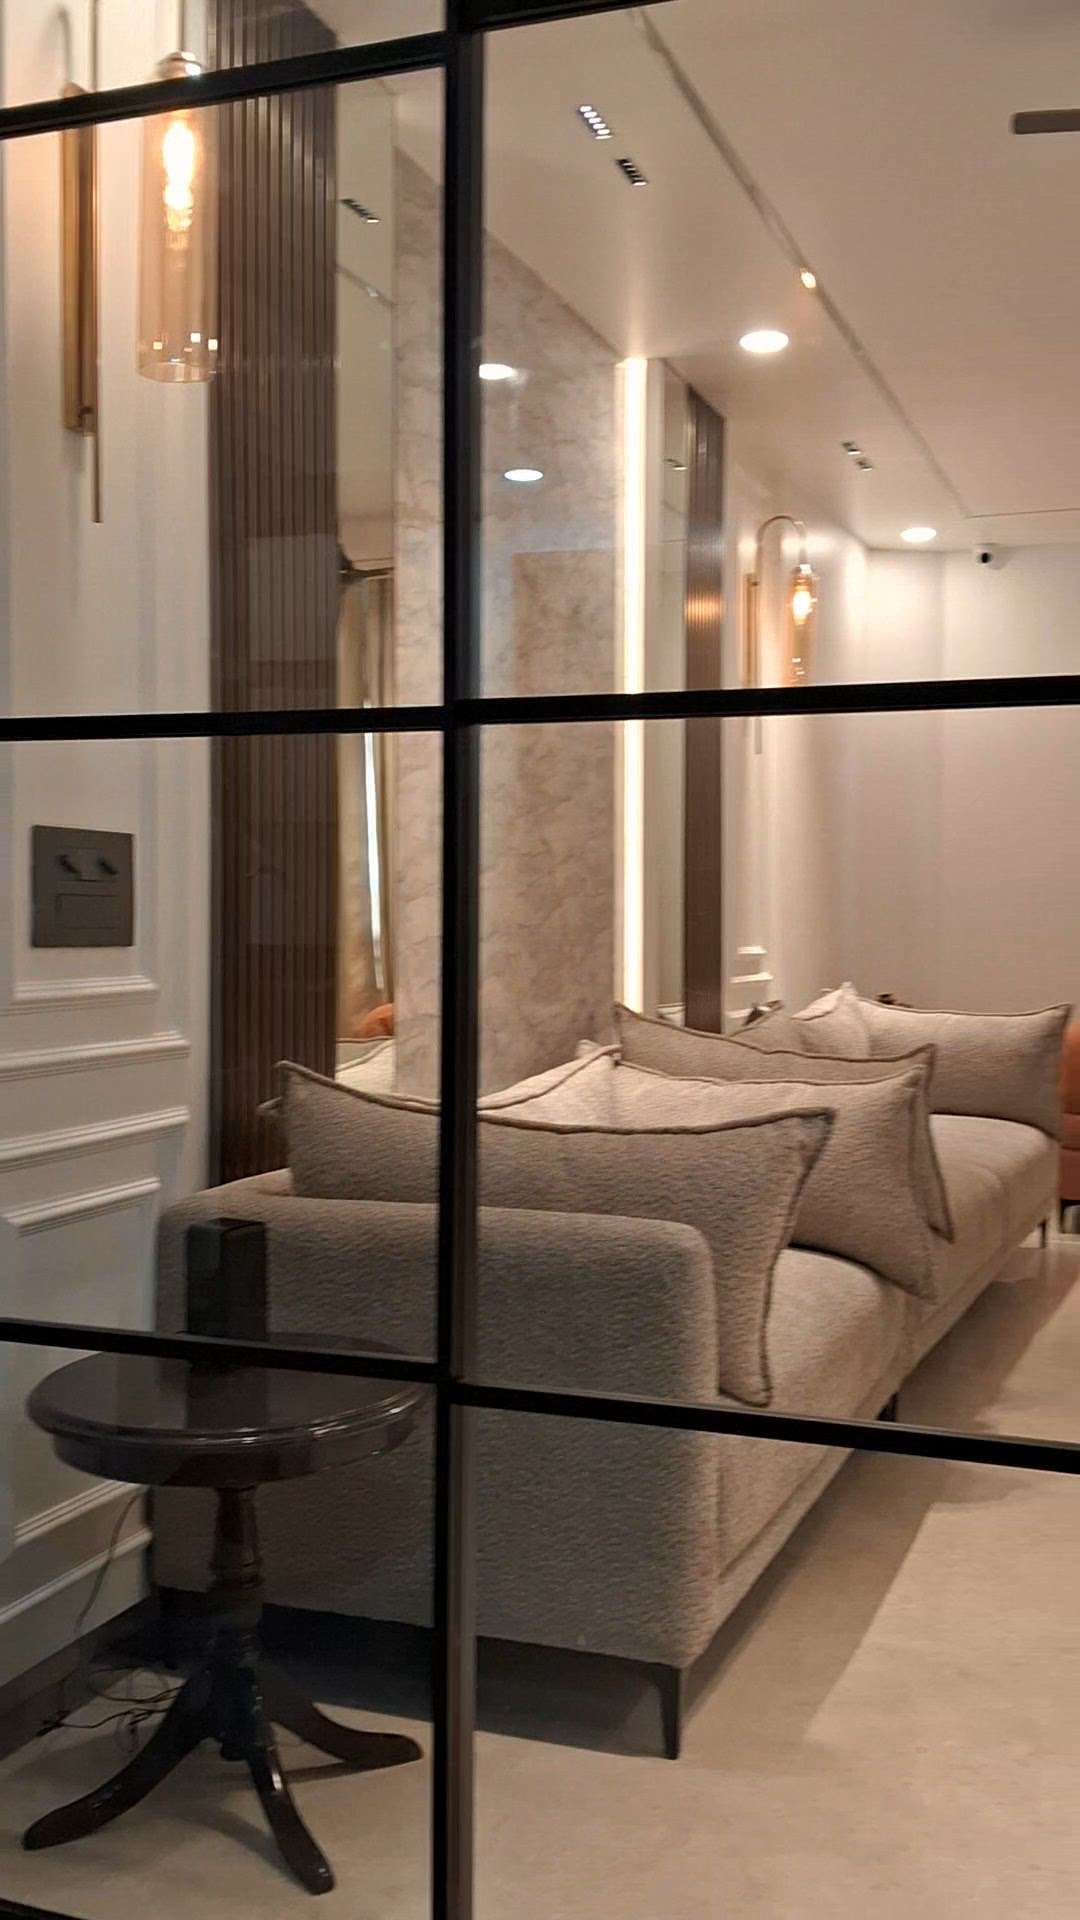 #LivingroomDesigns  #InteriorDesigner  #WindowsIdeas  #HouseIdeas